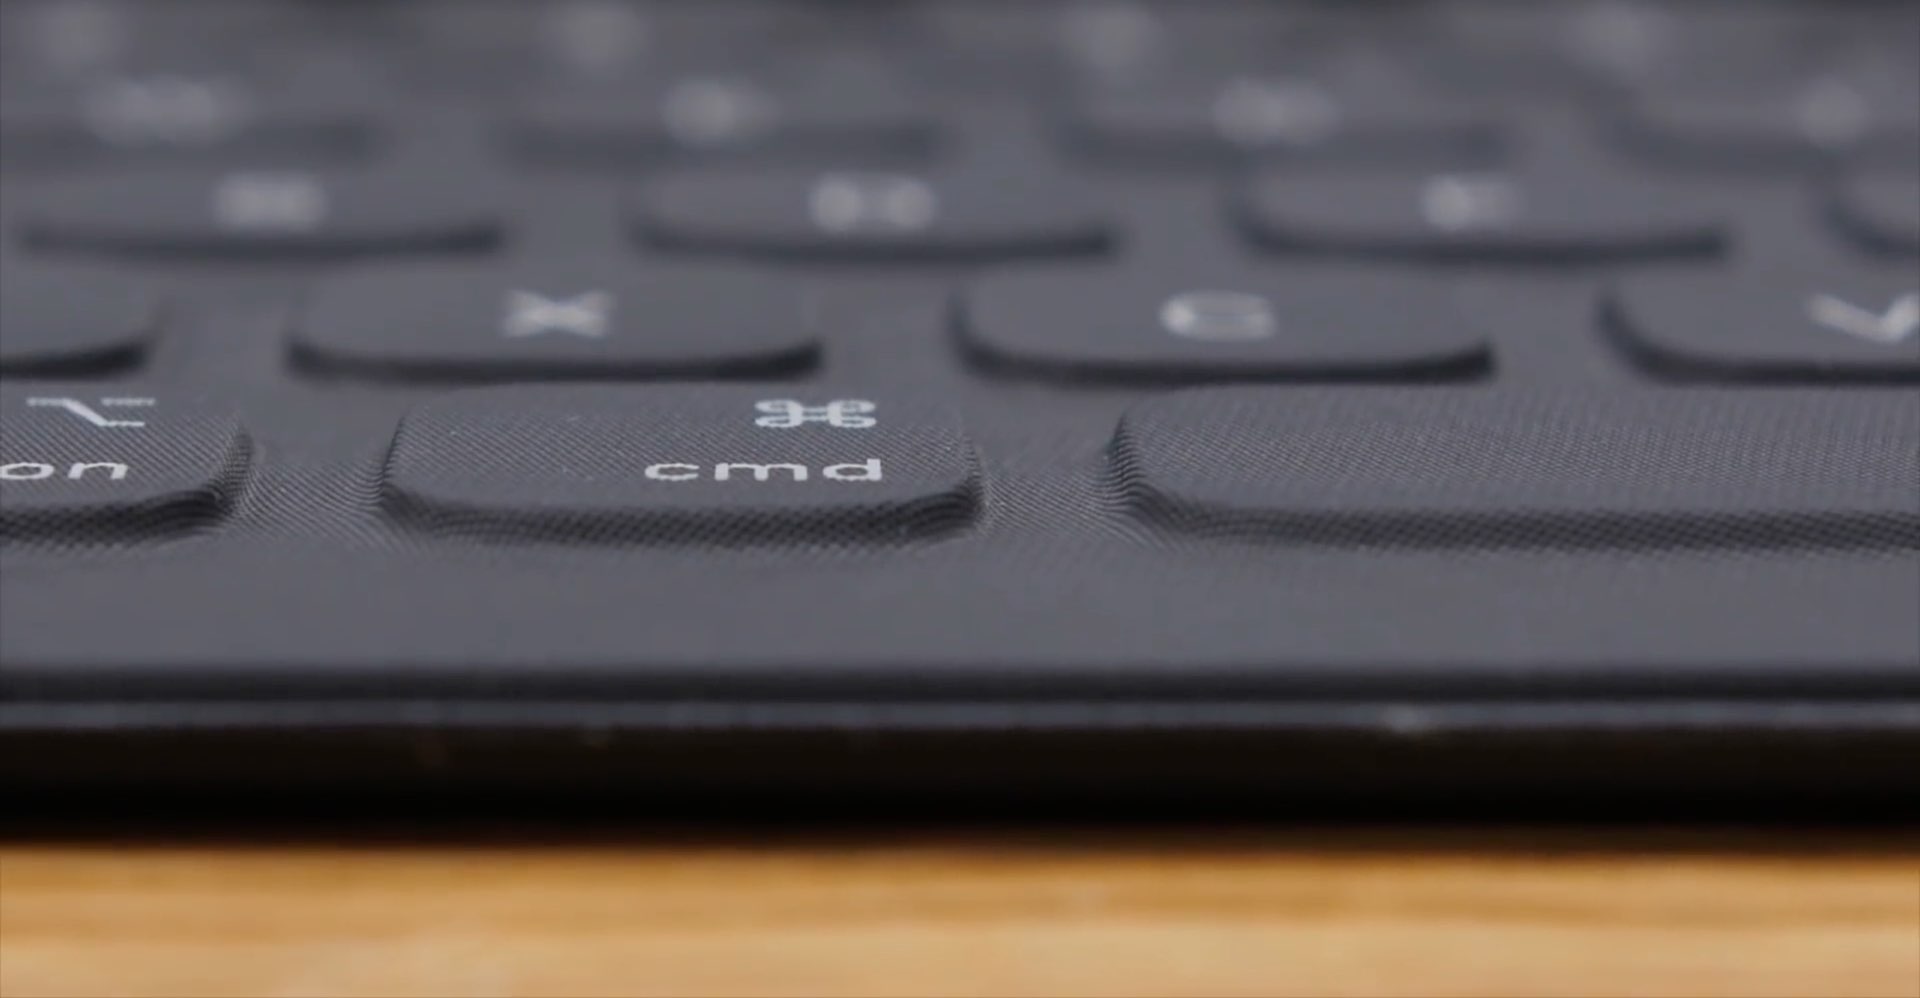 iPad keyboard modifier keys